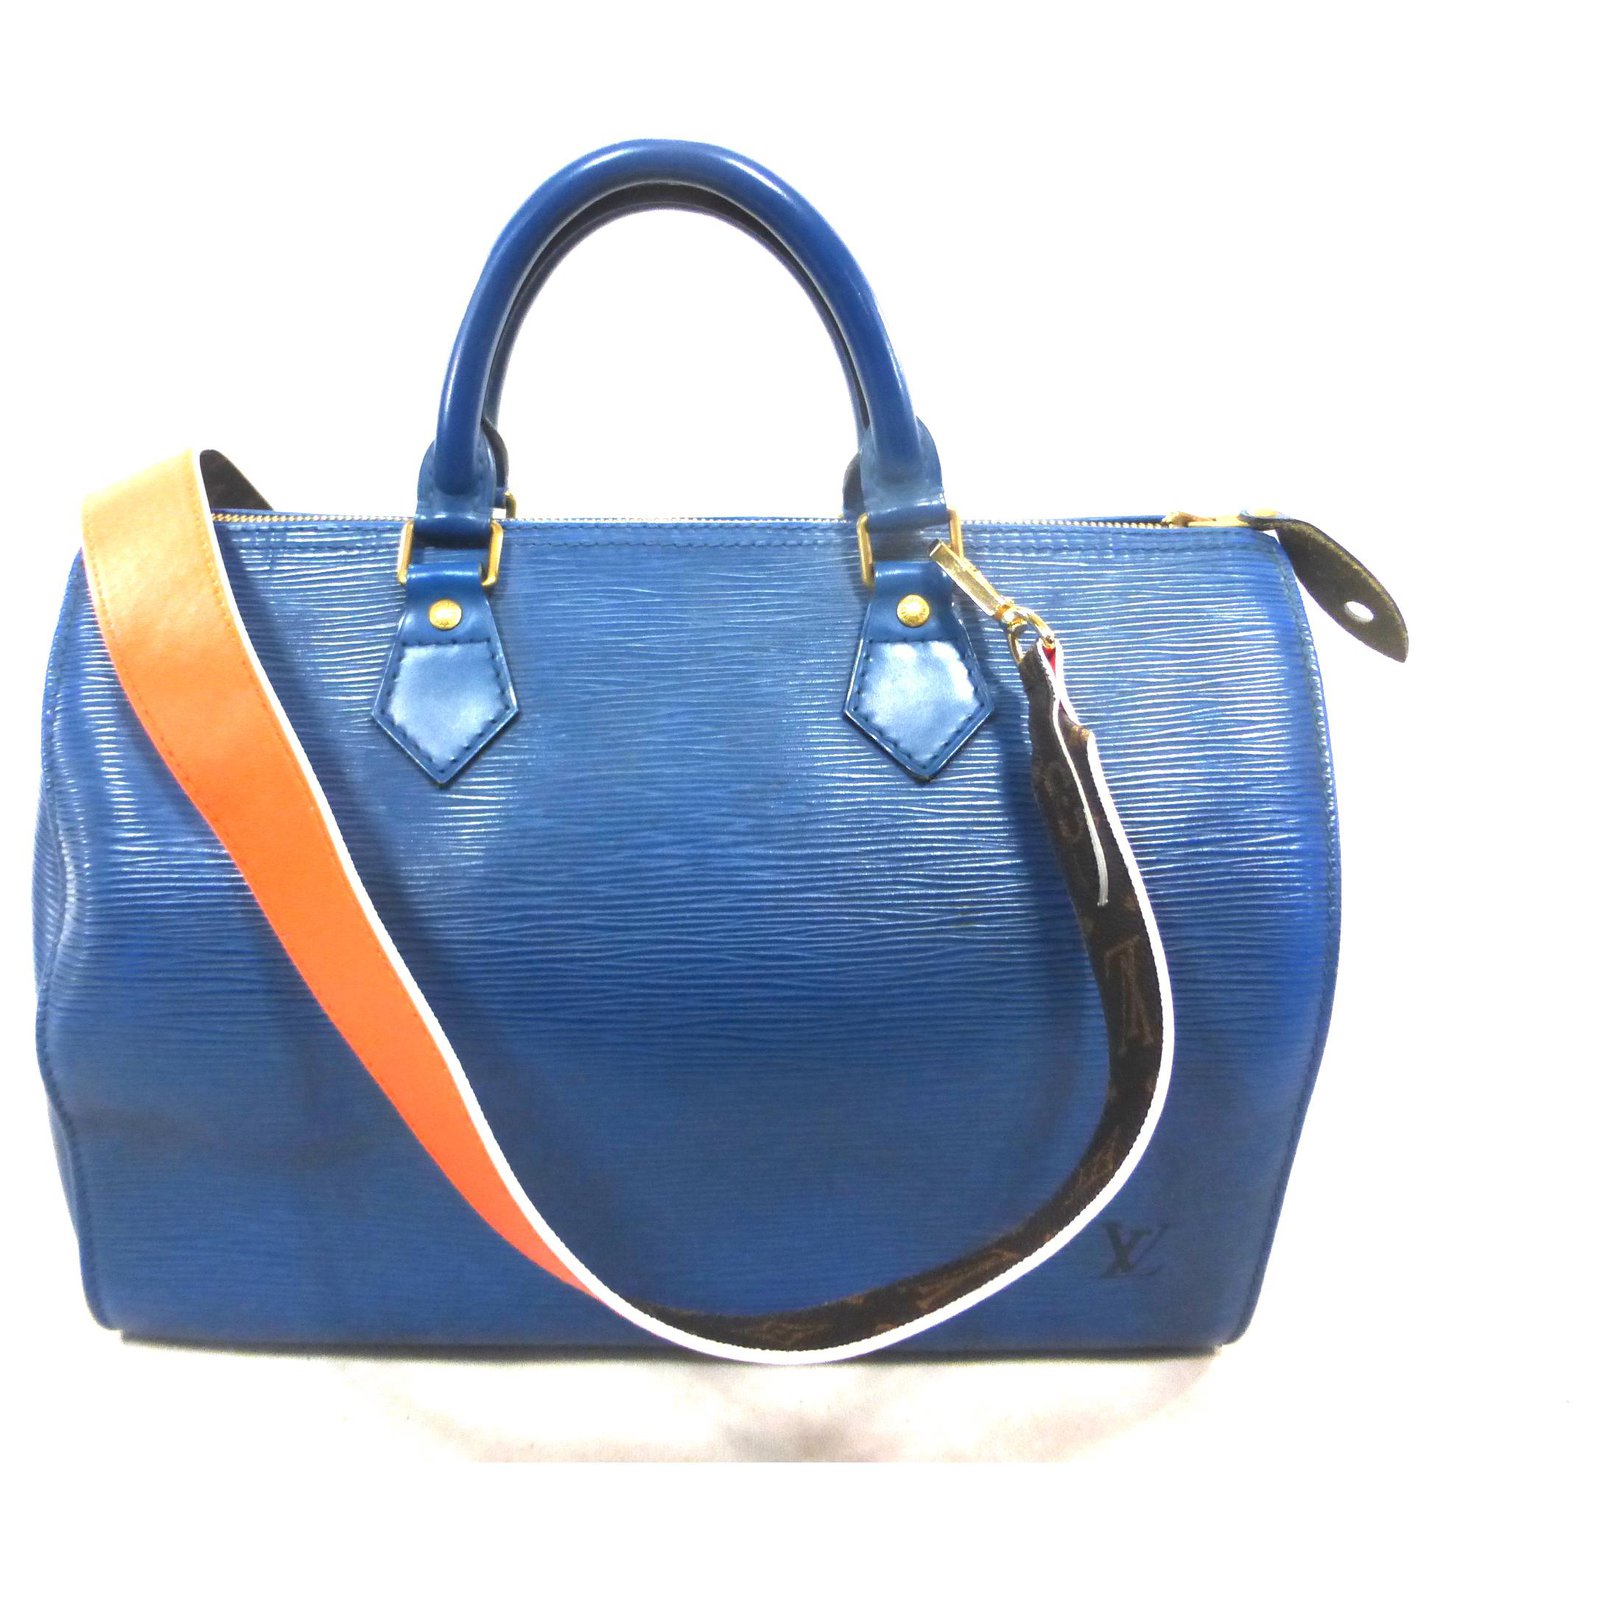 Louis Vuitton Speedy 30 blue epi leather + monogram / orange